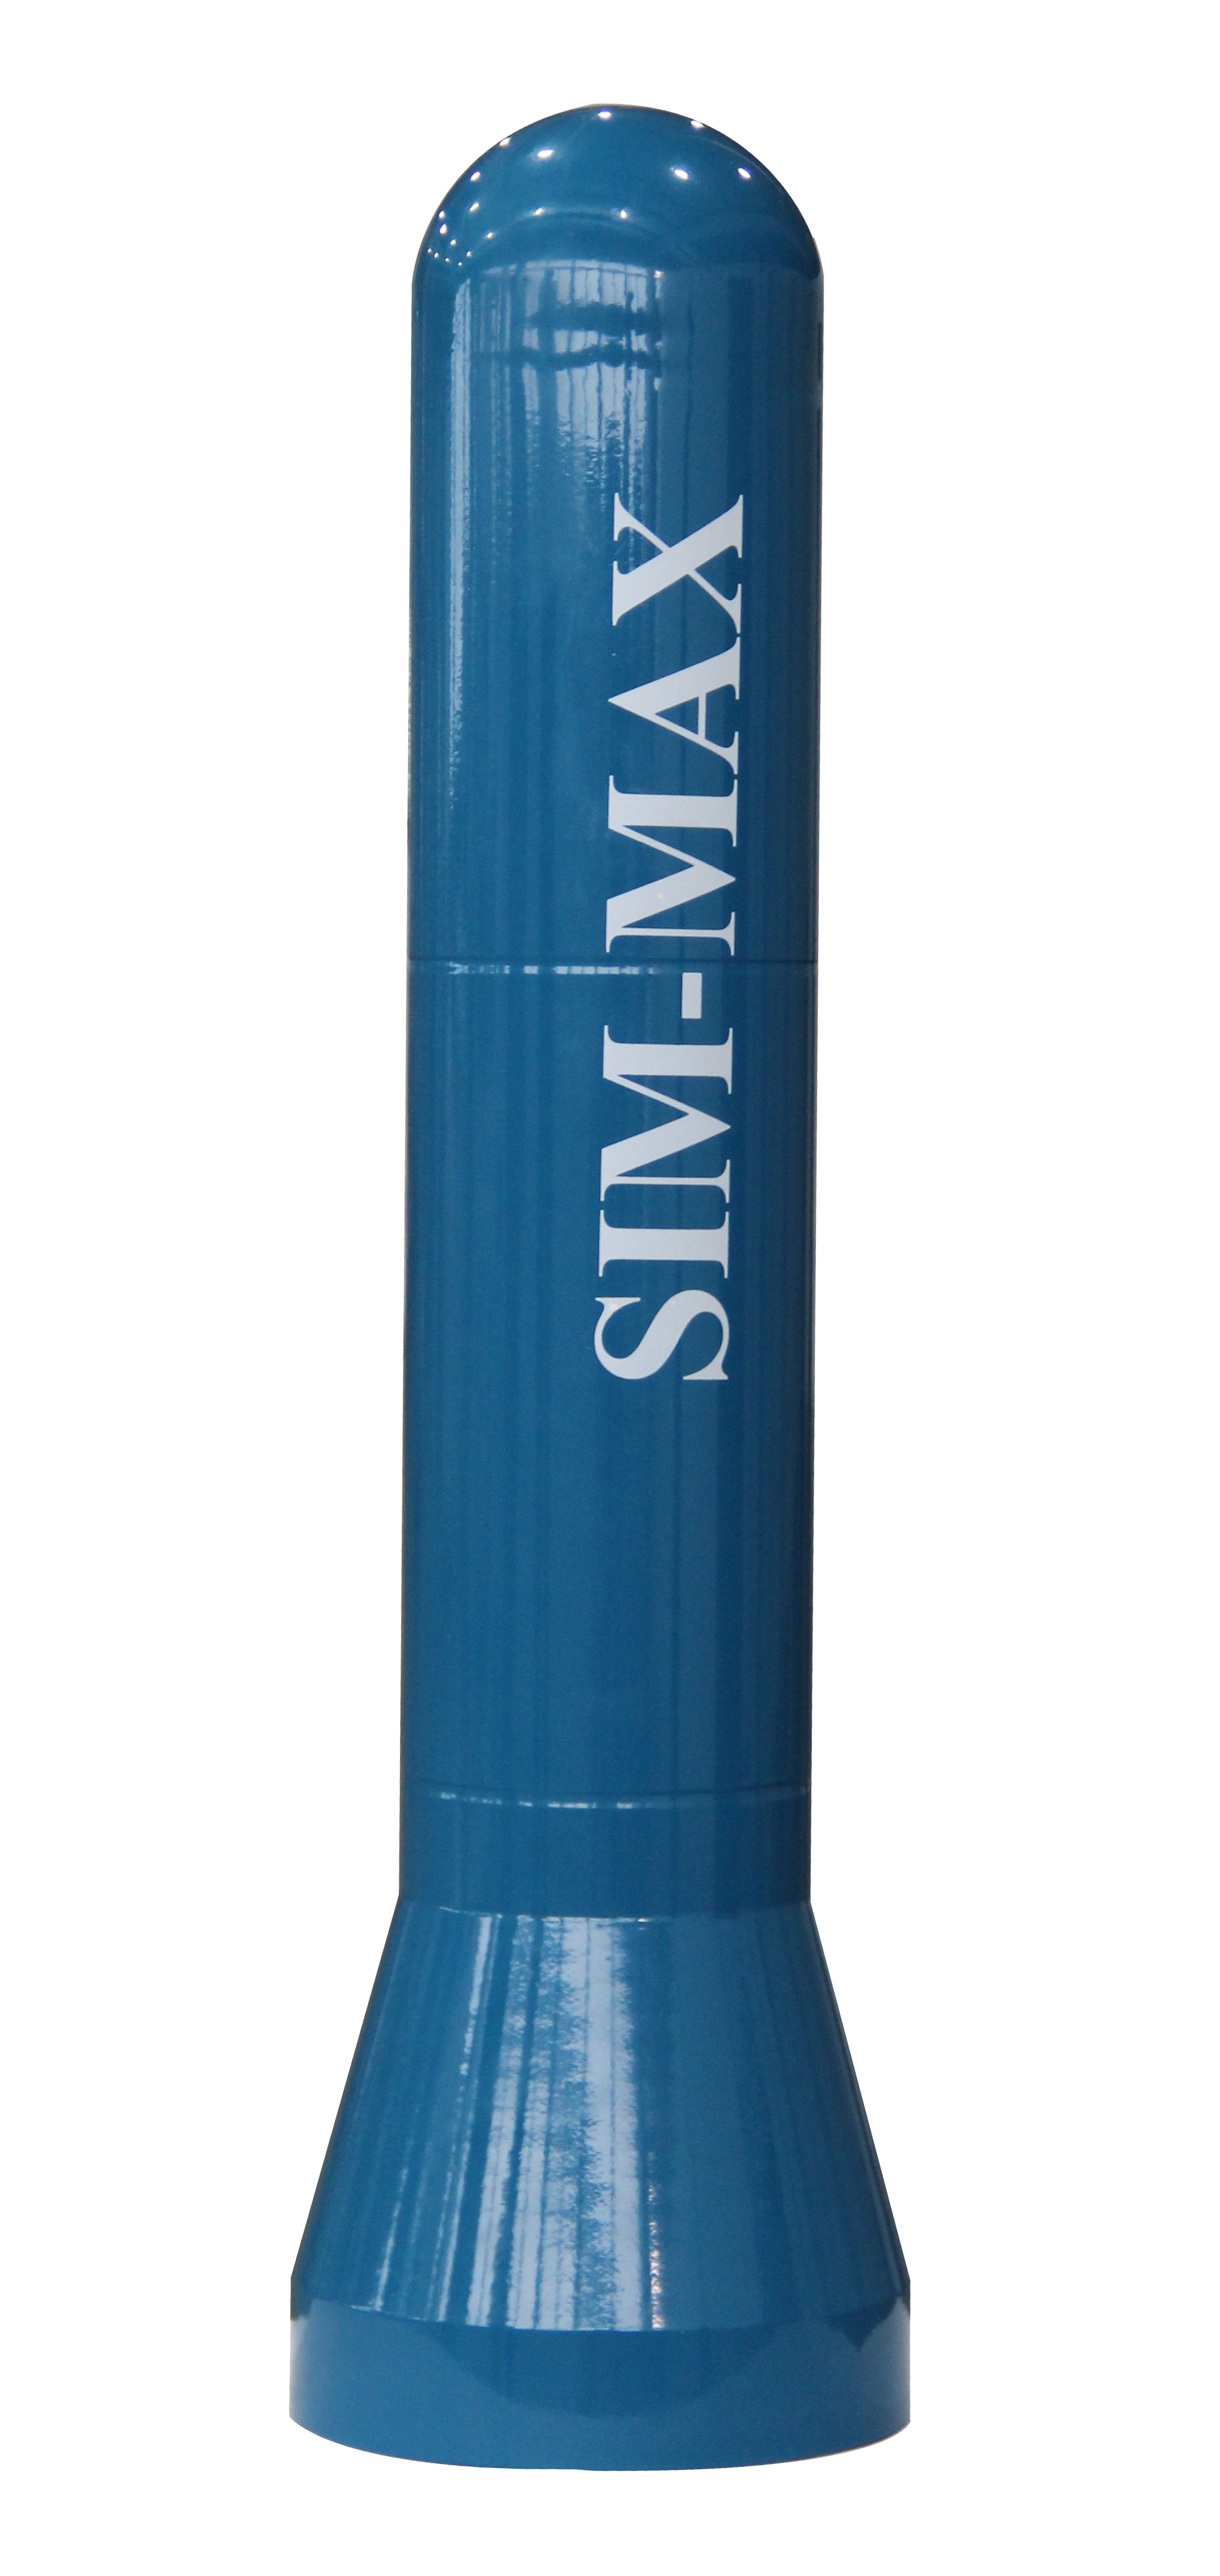 SIM-MAX G3320 环境伽马辐射剂量率连续监测系统